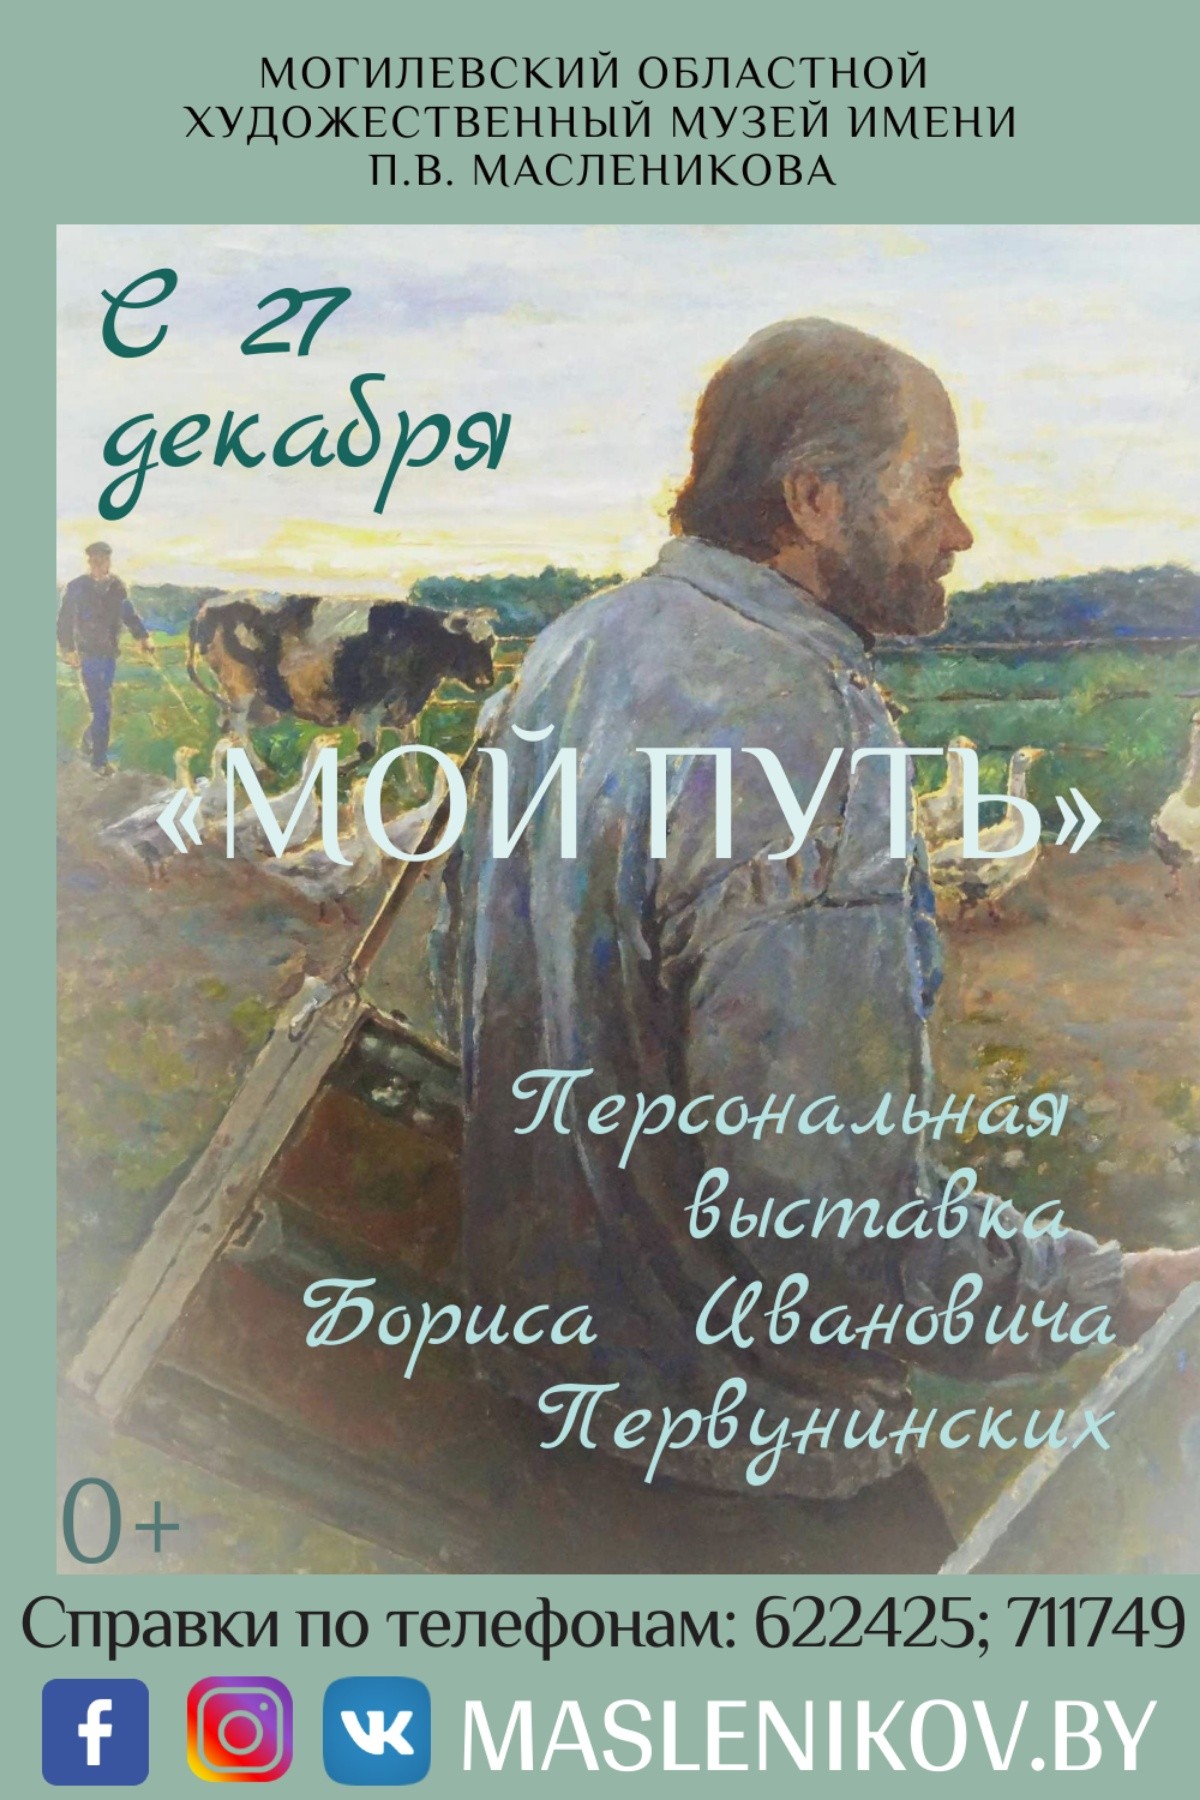 Торжественное открытие выставочного проекта Бориса Первунинских «Мой путь» 
состоится 27 декабря в Могилеве